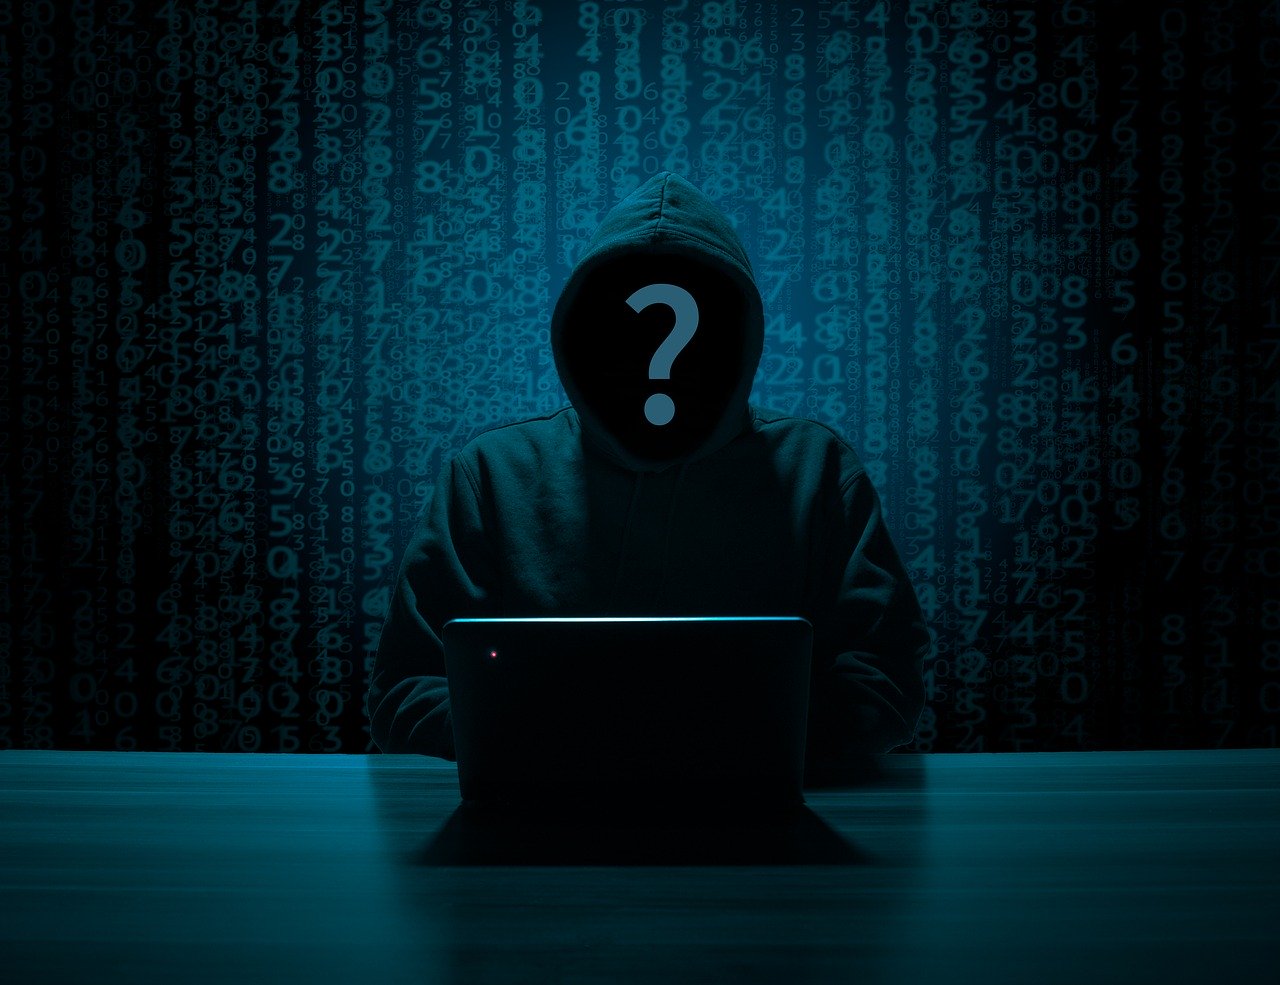 Das Bild zeigt einen Mann mit Kapuze, dessen Gesicht nicht sichtbar ist. Cyberkriminelle nutzen Corona für ihre Machenschaften. Bild: Pixabay/B_A